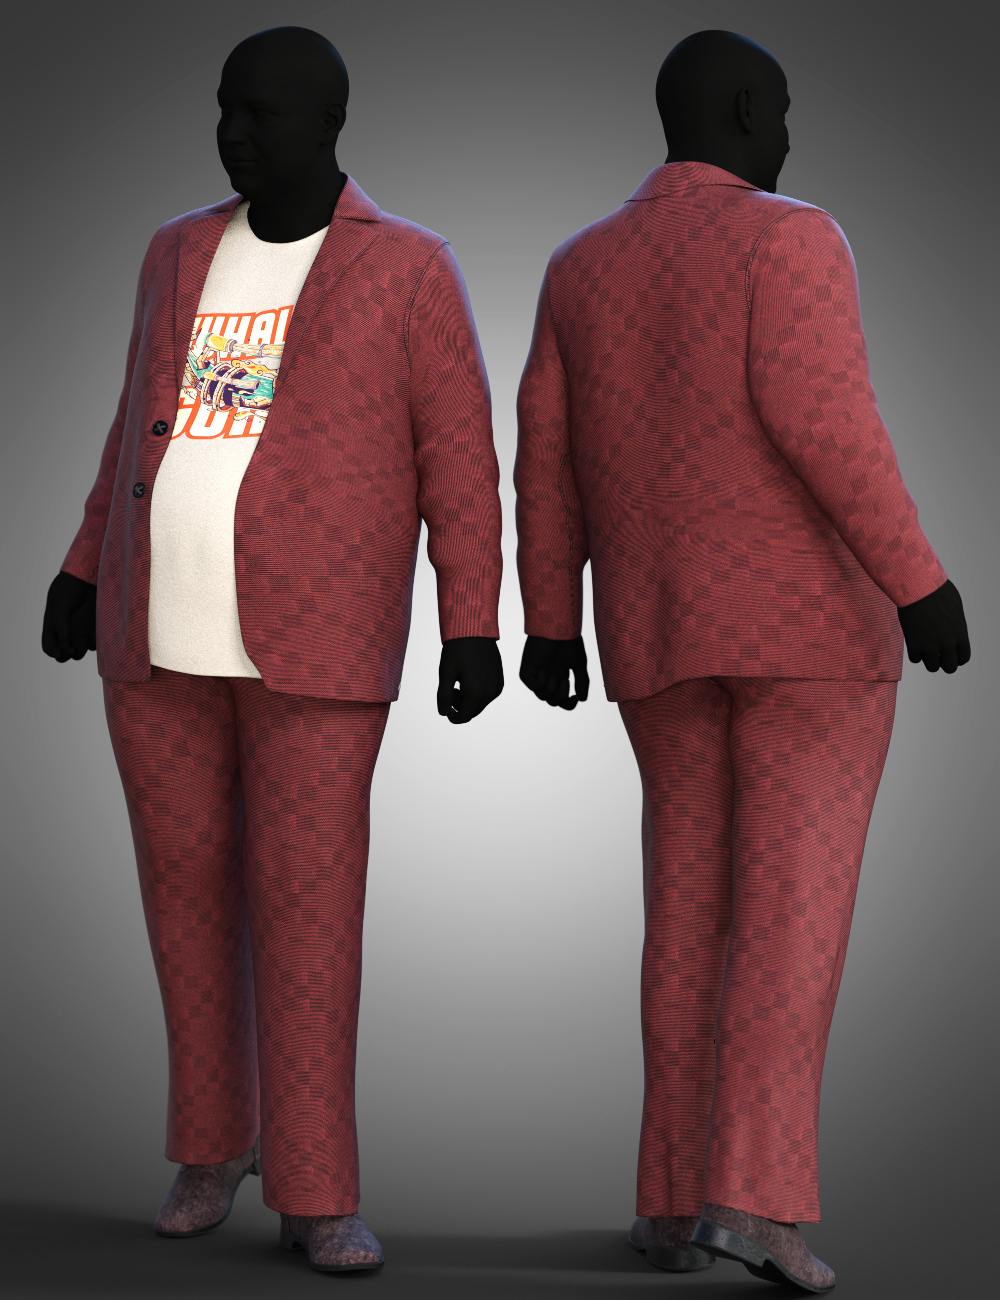 dForce Casual Suit Textures by: Moonscape GraphicsSade, 3D Models by Daz 3D